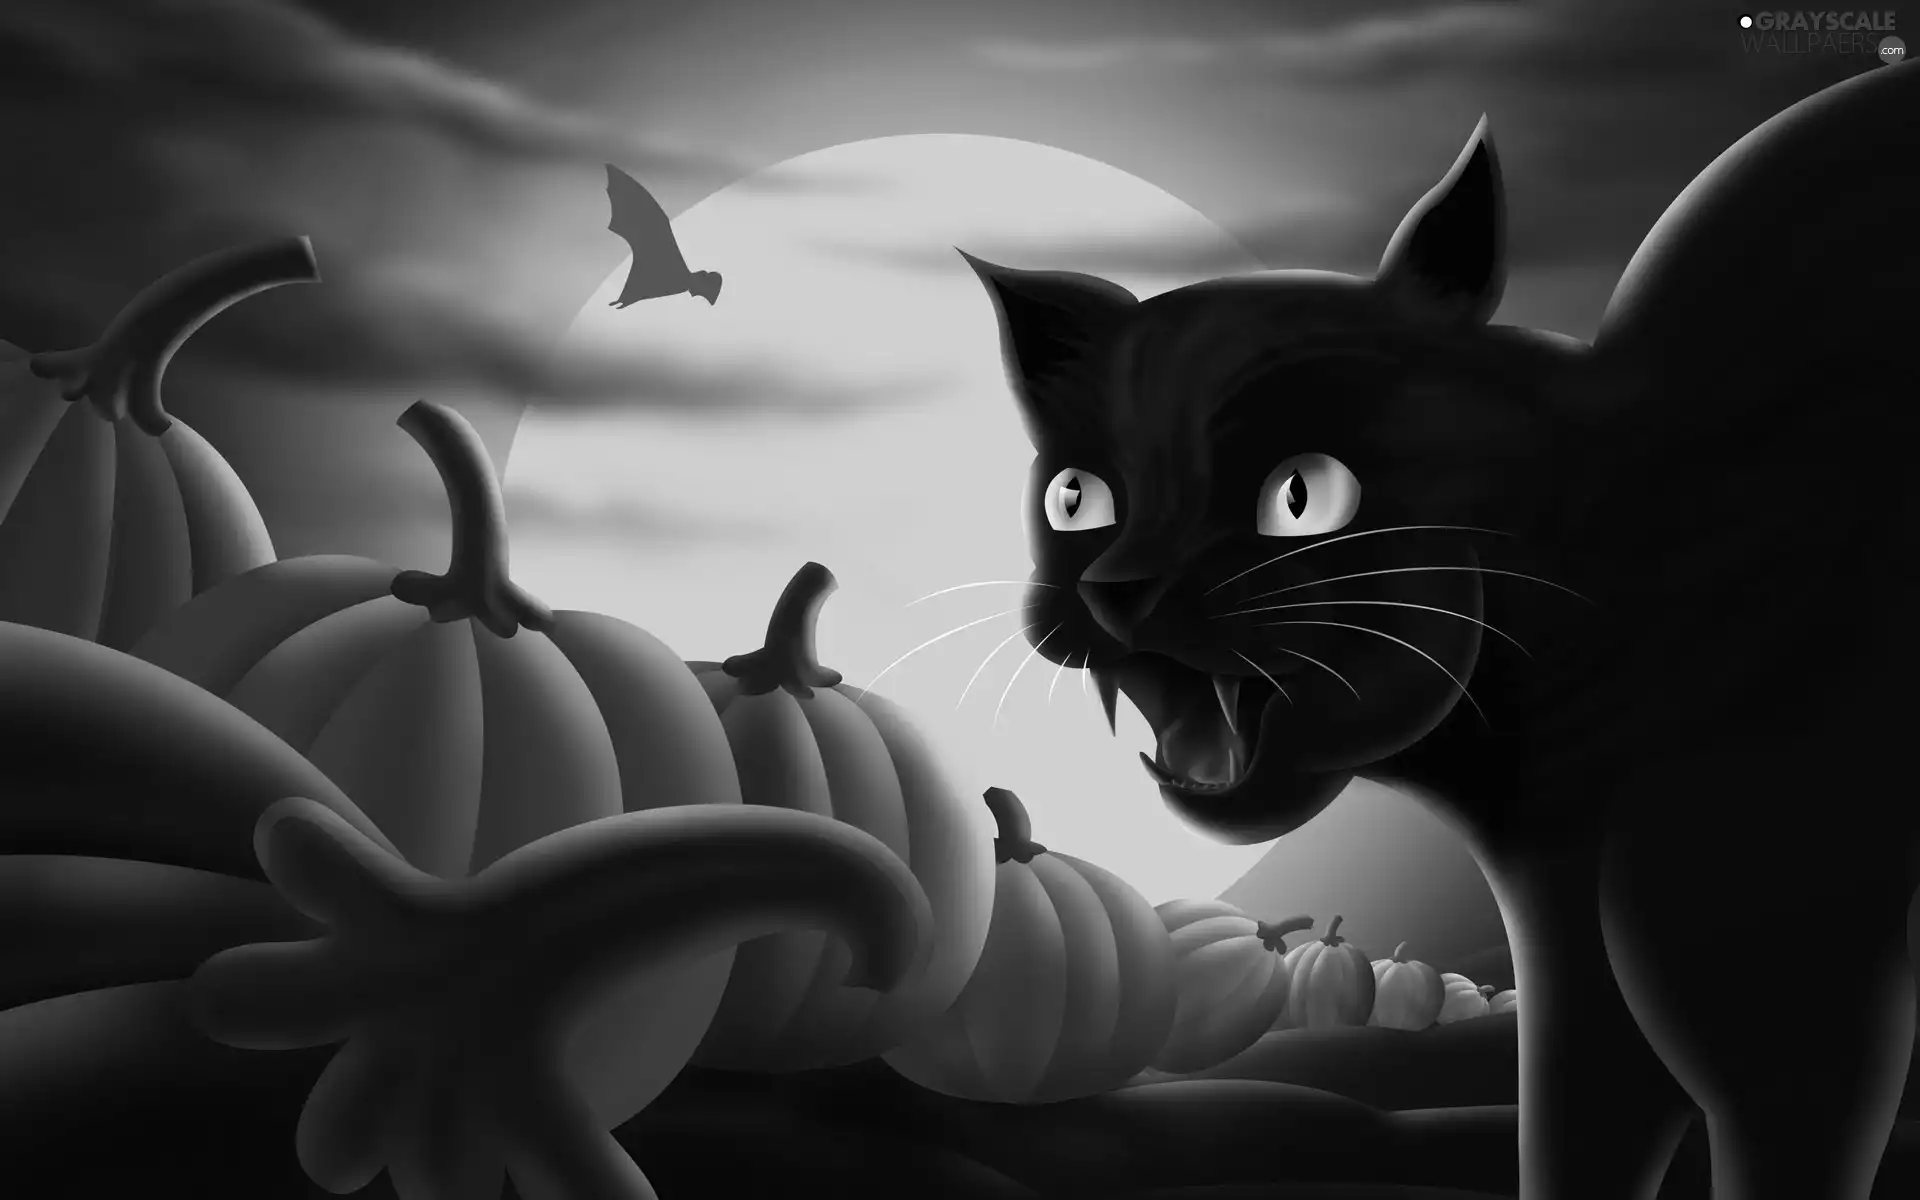 halloween, cat, pumpkin